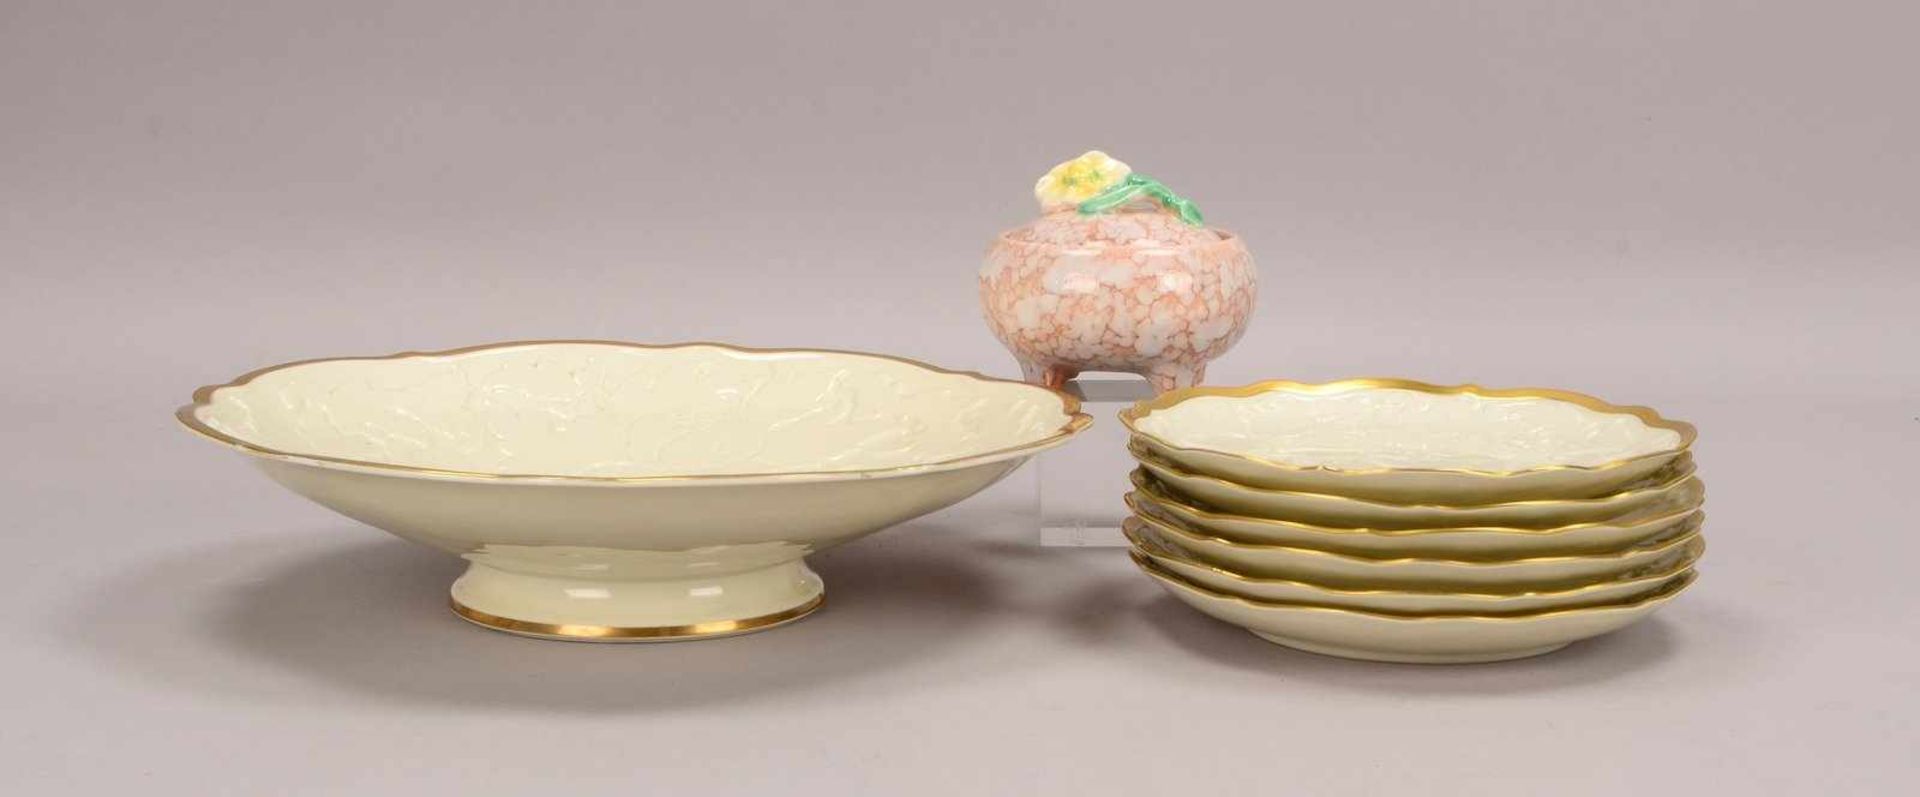 Rosenthal/Kunstabteilung Selb, Porzellan-Obstschale mit 6-teiligem Tellersatz, Reliefdekor, mit